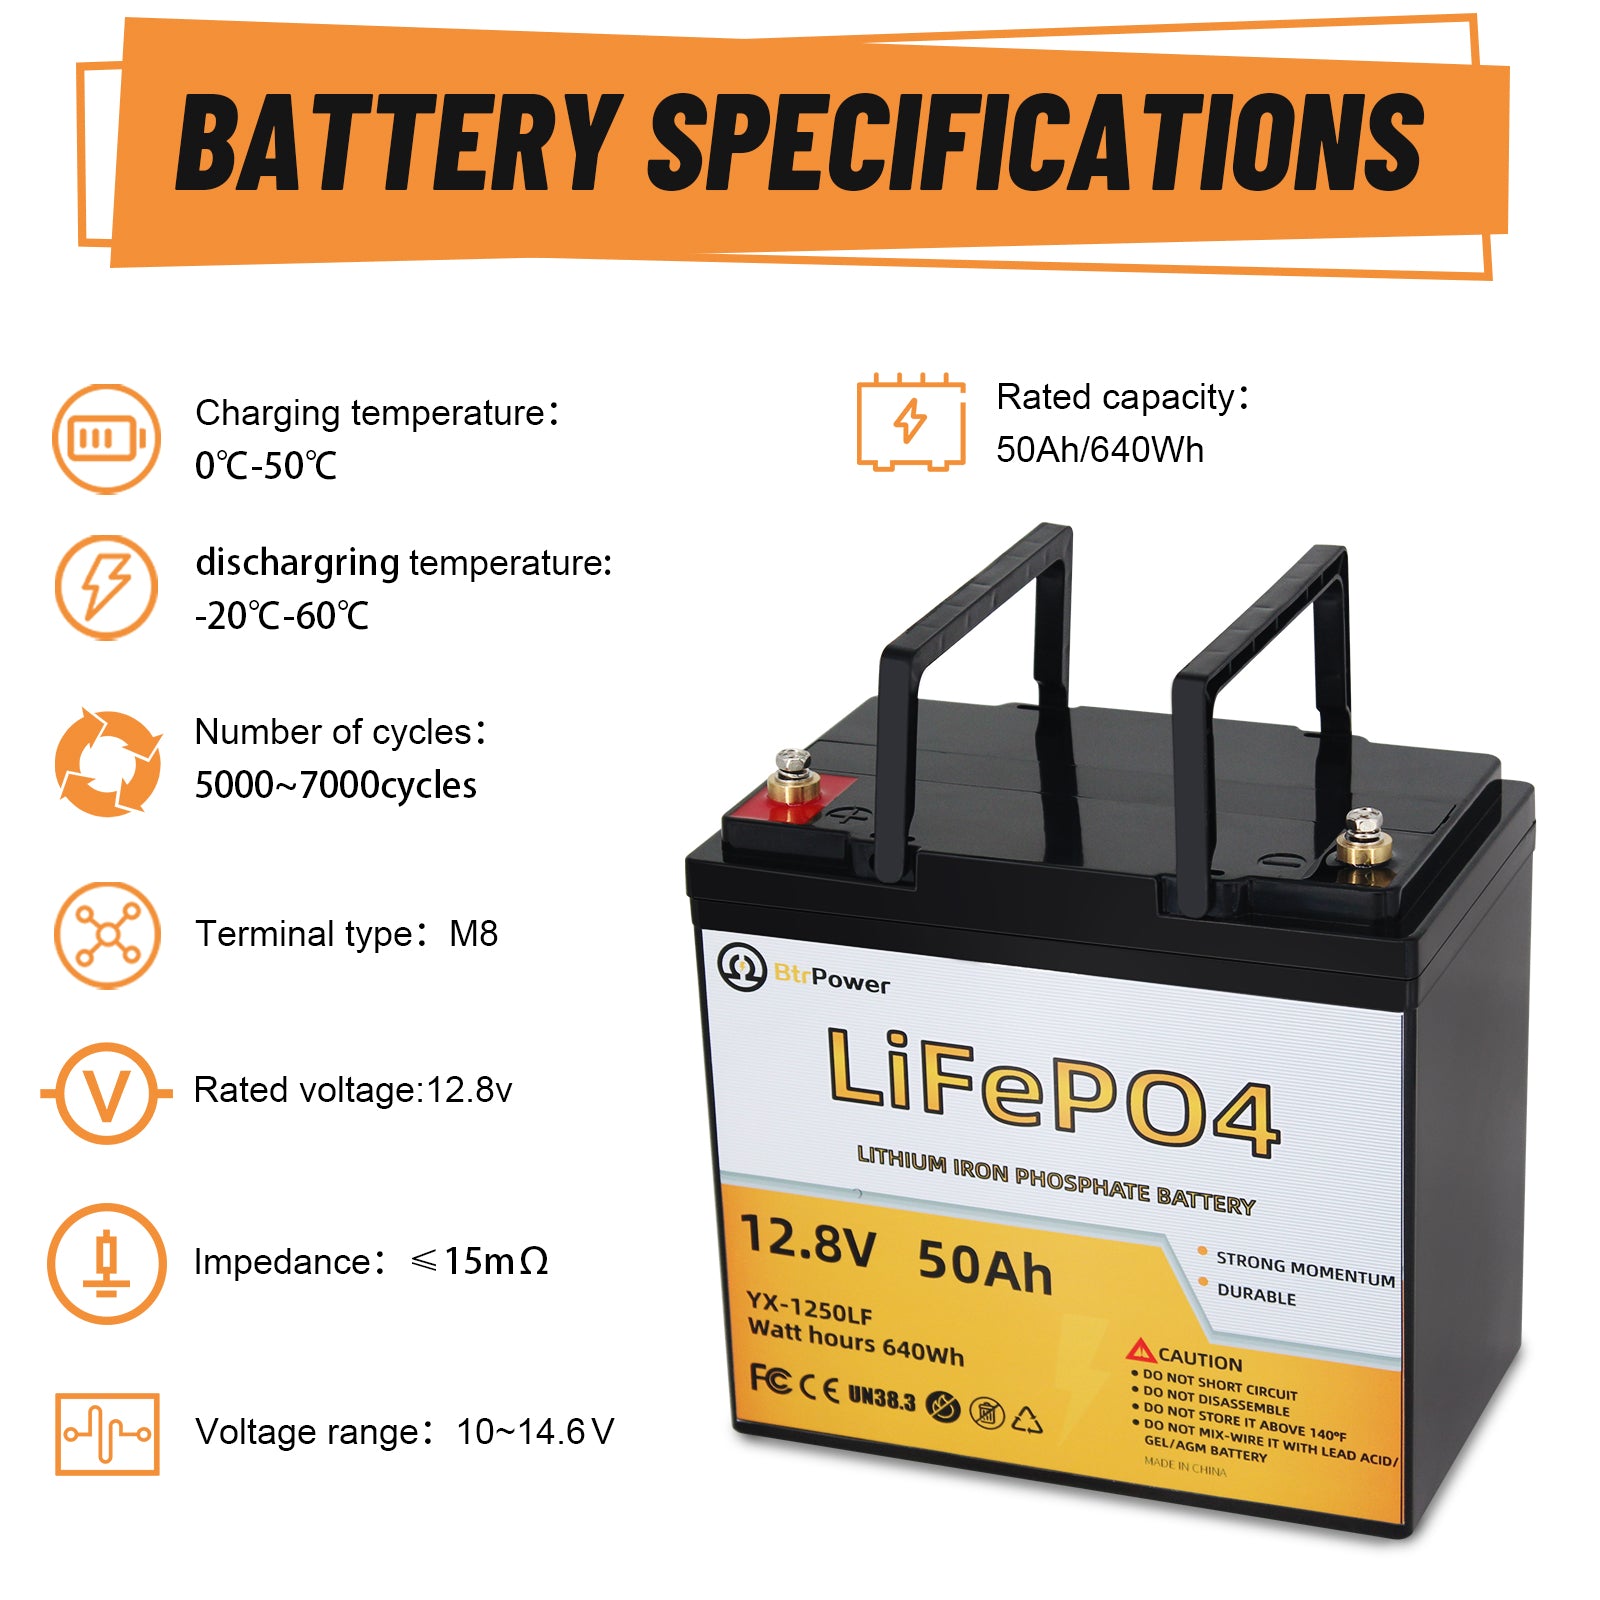  12V 50Ah LiFePO4 Lithium Battery, 4000+ Deep Cycle